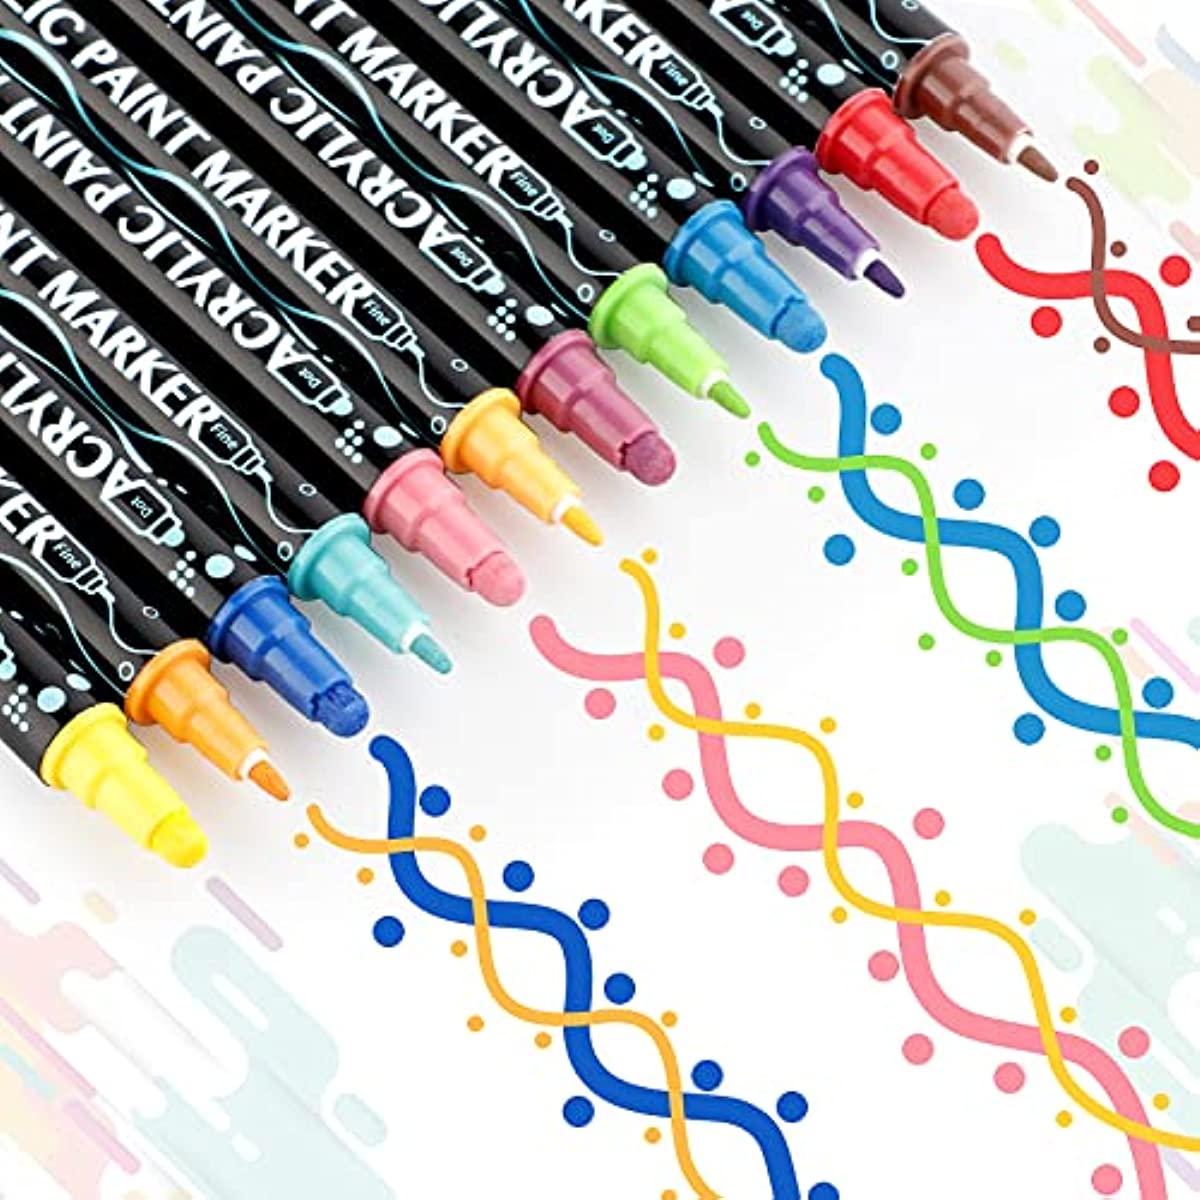 PAINTIGO 26 Paint Pens Paint Markers, Acrylic Paint Pens for Rock Painting, Canvas, Wood, Glass, Ceramic, Fabric, Acrylic Paint Markers for Craft